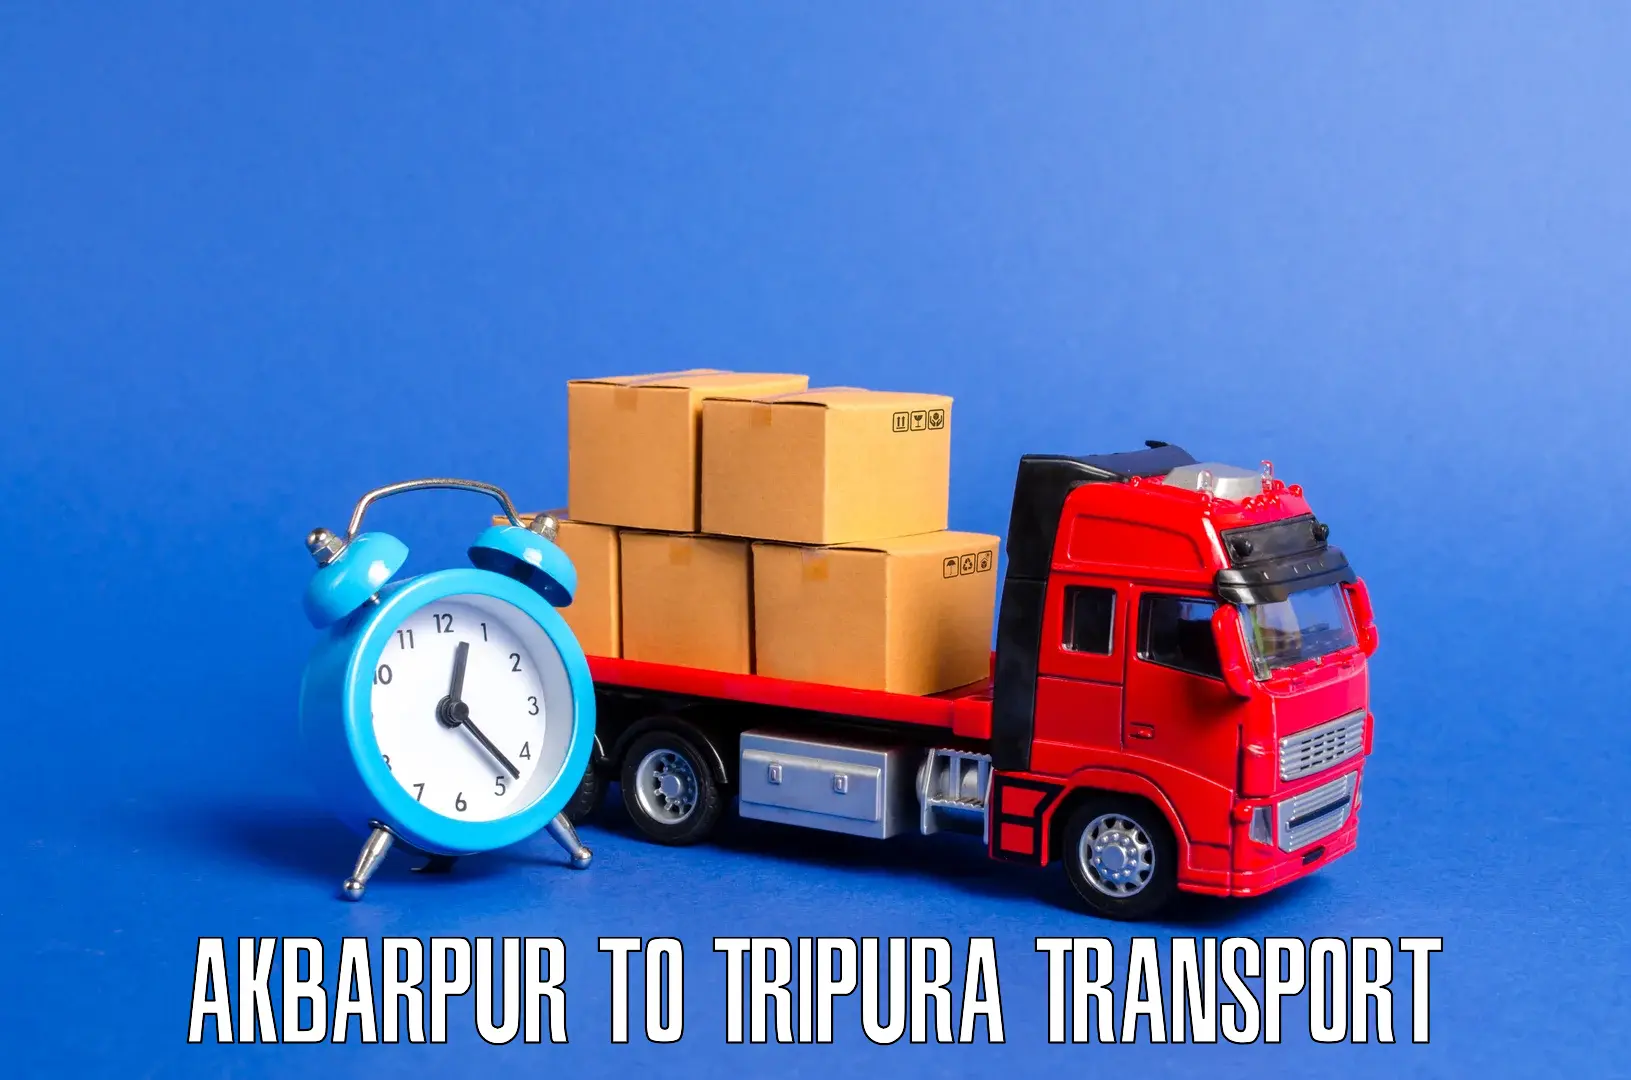 Interstate transport services in Akbarpur to Bishalgarh